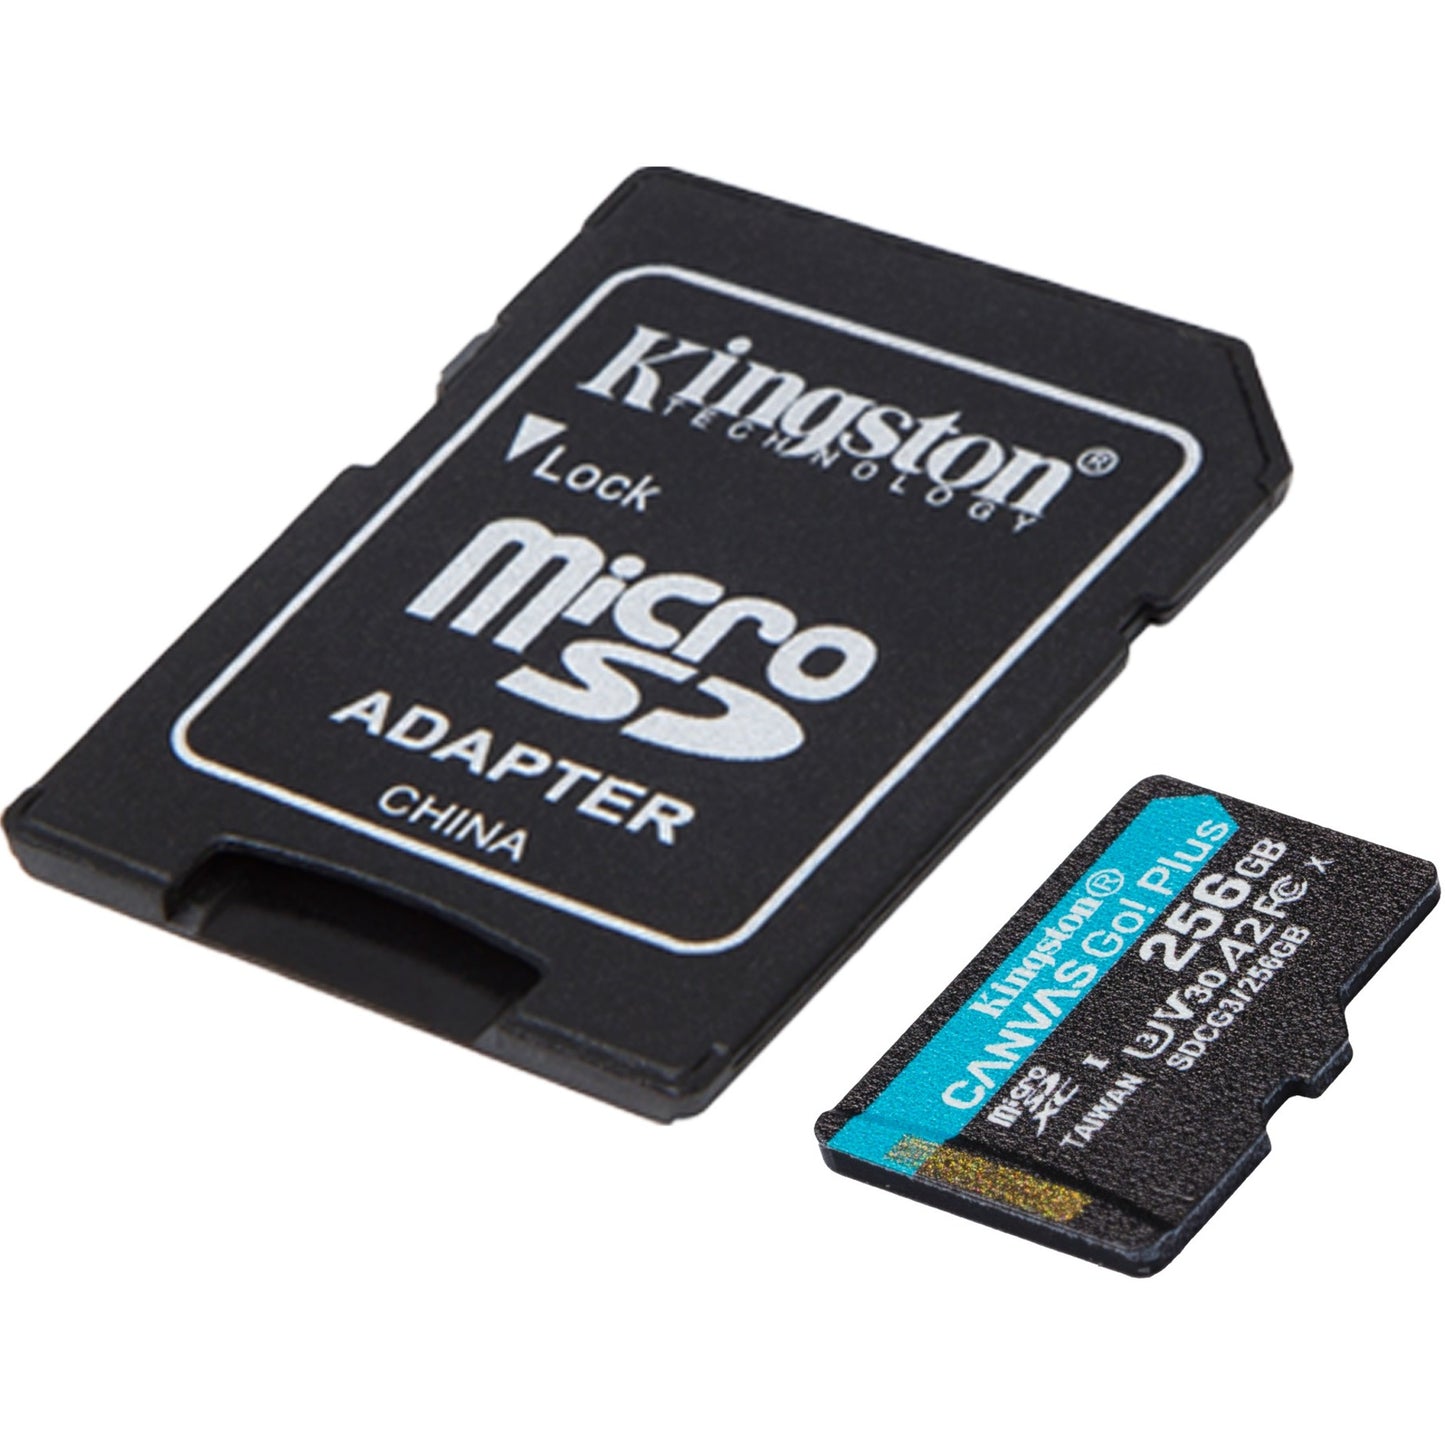 Kingston Canvas Go! Plus microSDXC 256 GB